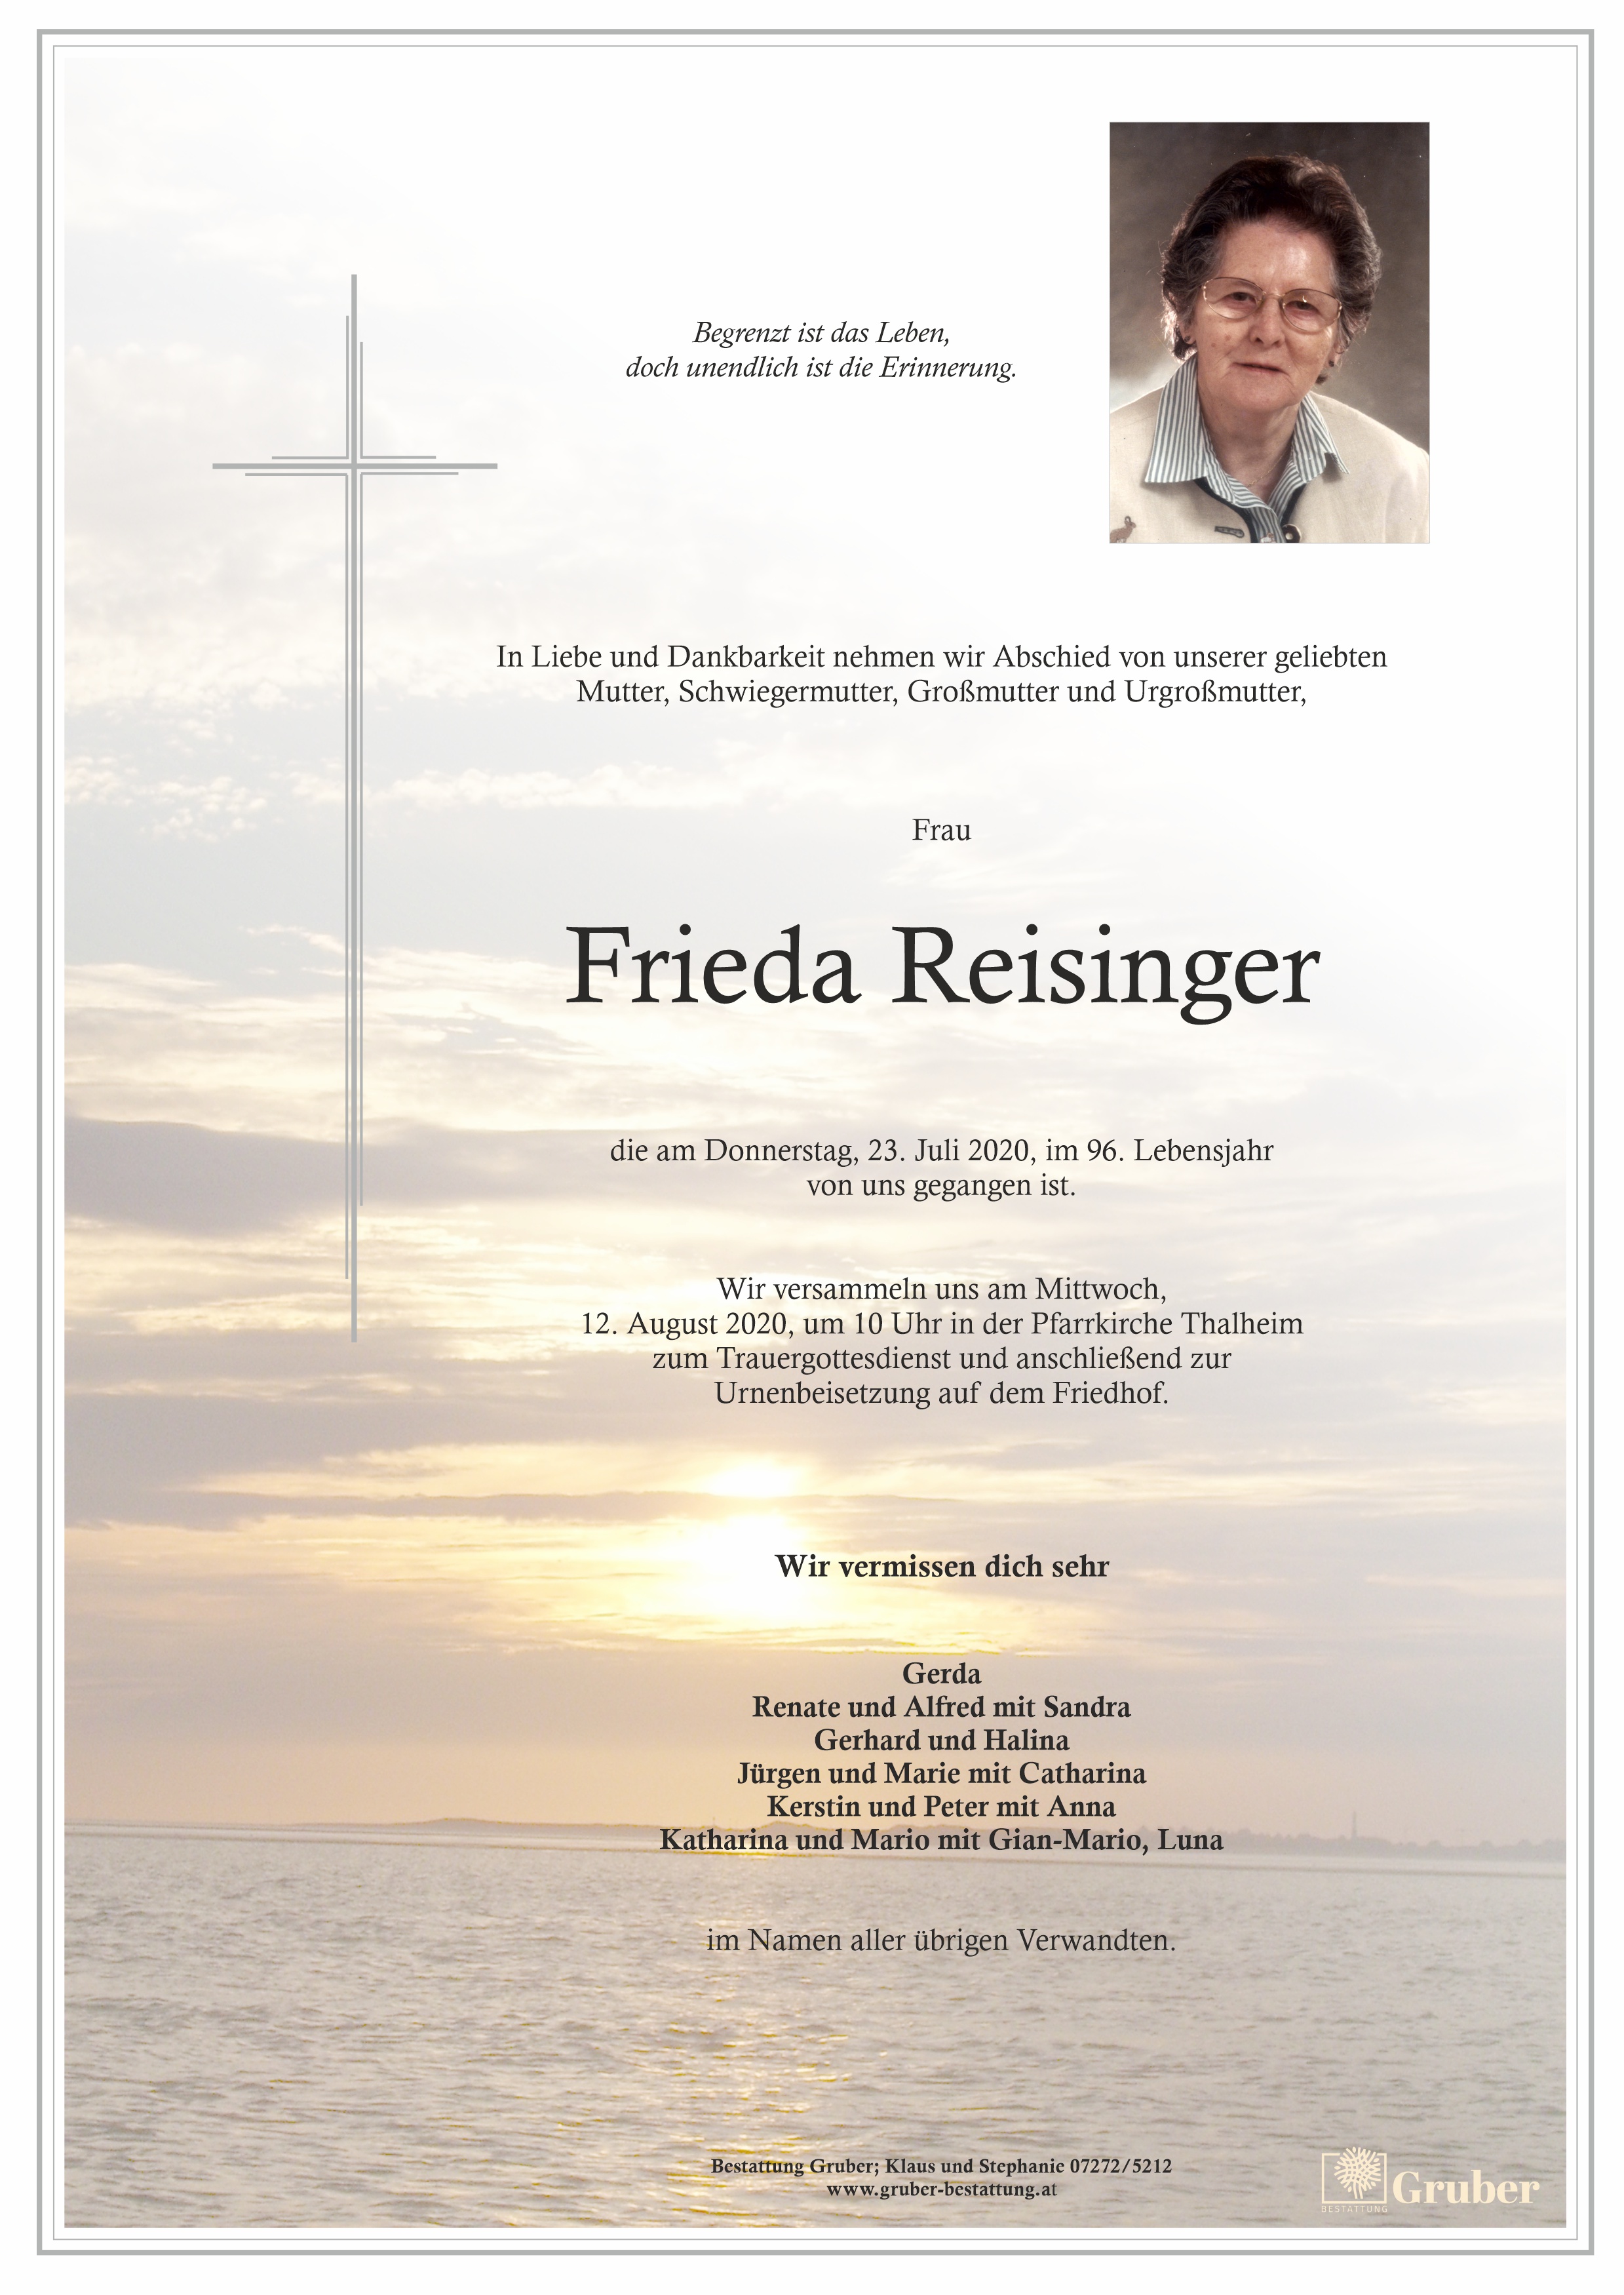 Frieda Reisinger (Thalheim)